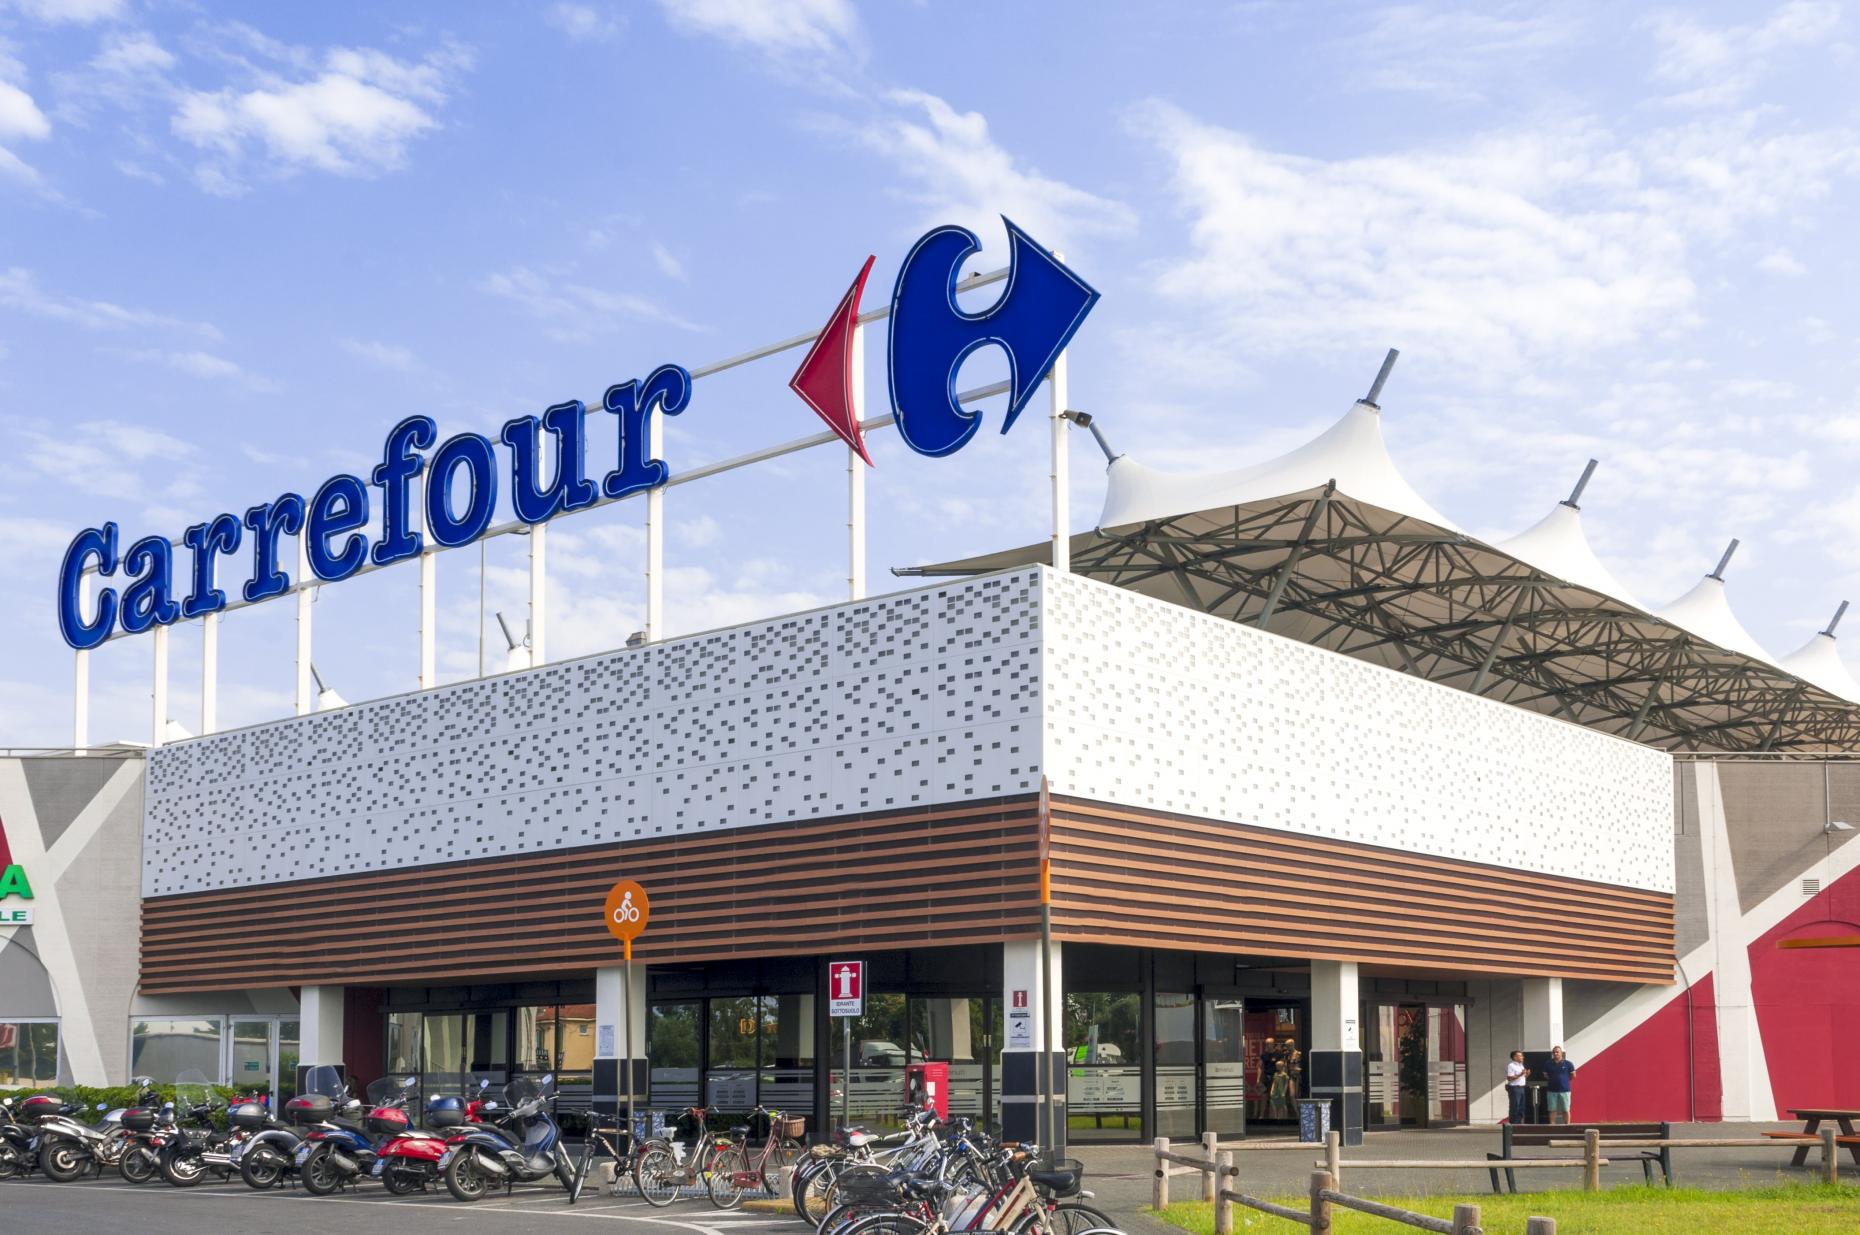 Carrefour s'està inflant a vendre el set d'exterior de 6 butaques que desapareixen sota de la taula